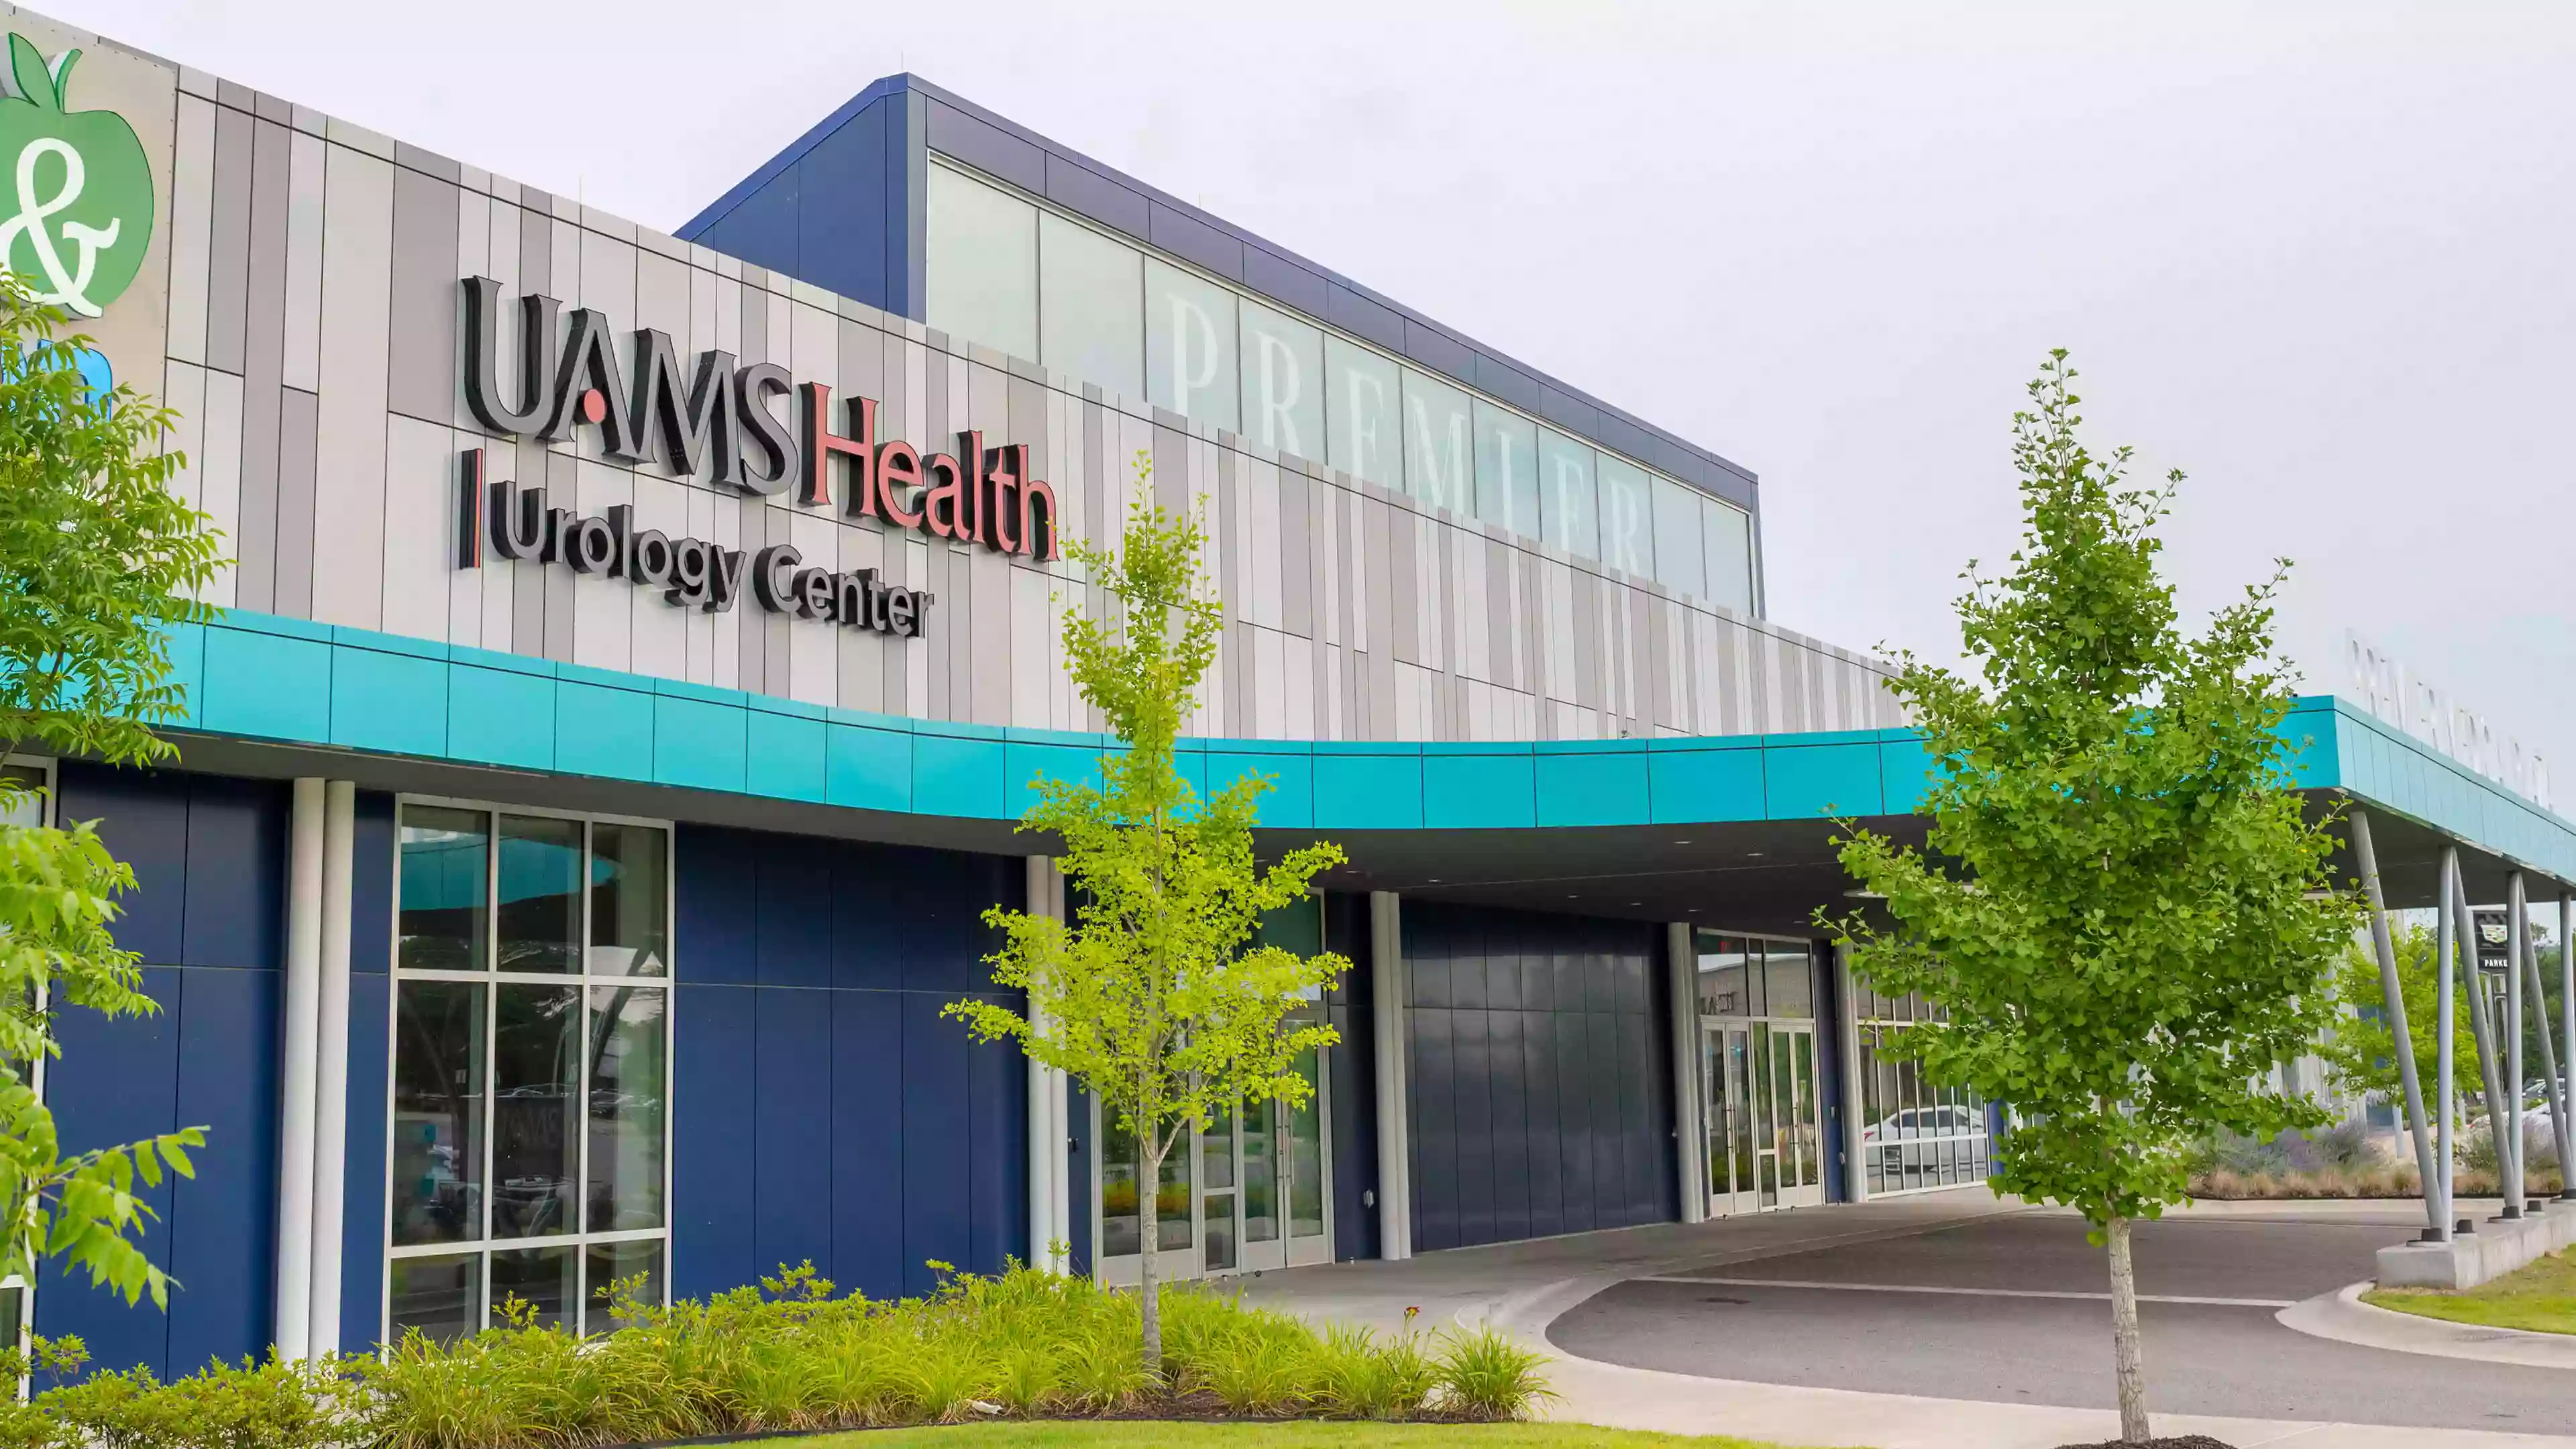 UAMS Health - Urology Clinic